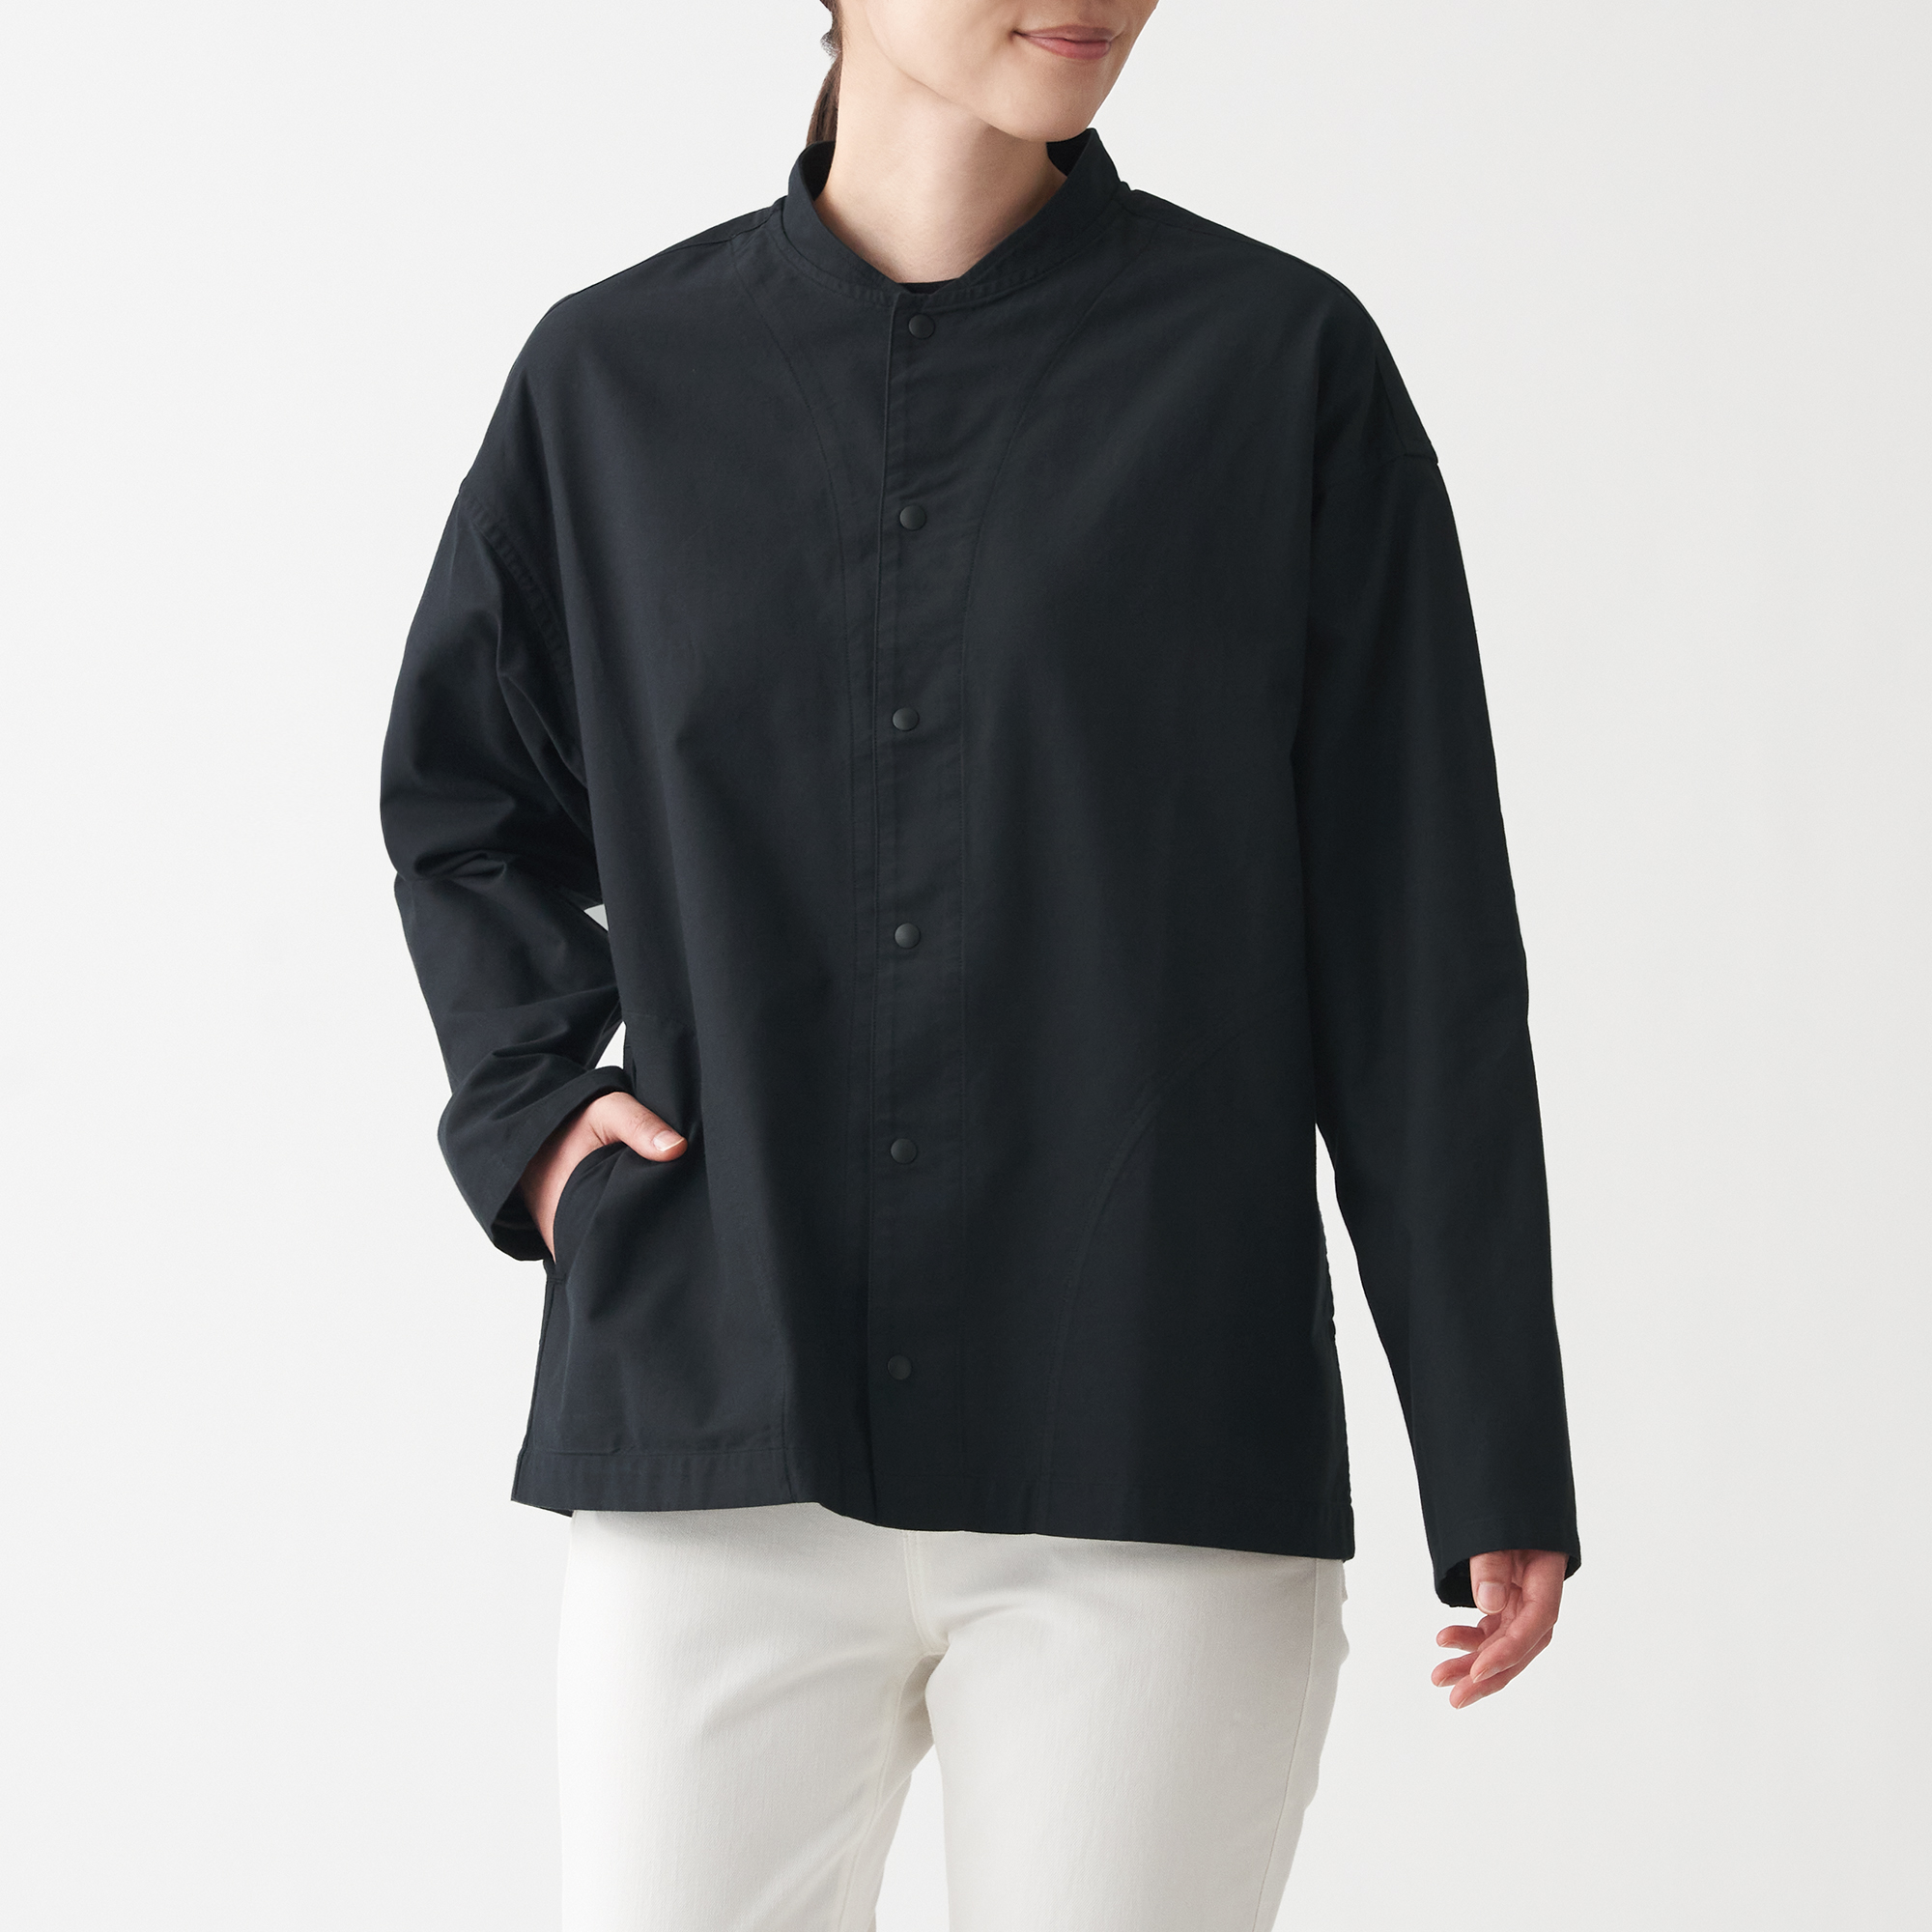 มูจิ เสื้อเชิ้ตผ้าออกซฟอร์ตฟอก ปกตั้ง Unisex - MUJI Washed Oxford Stand Collar Shirt สี ดำ ขนาด XXS